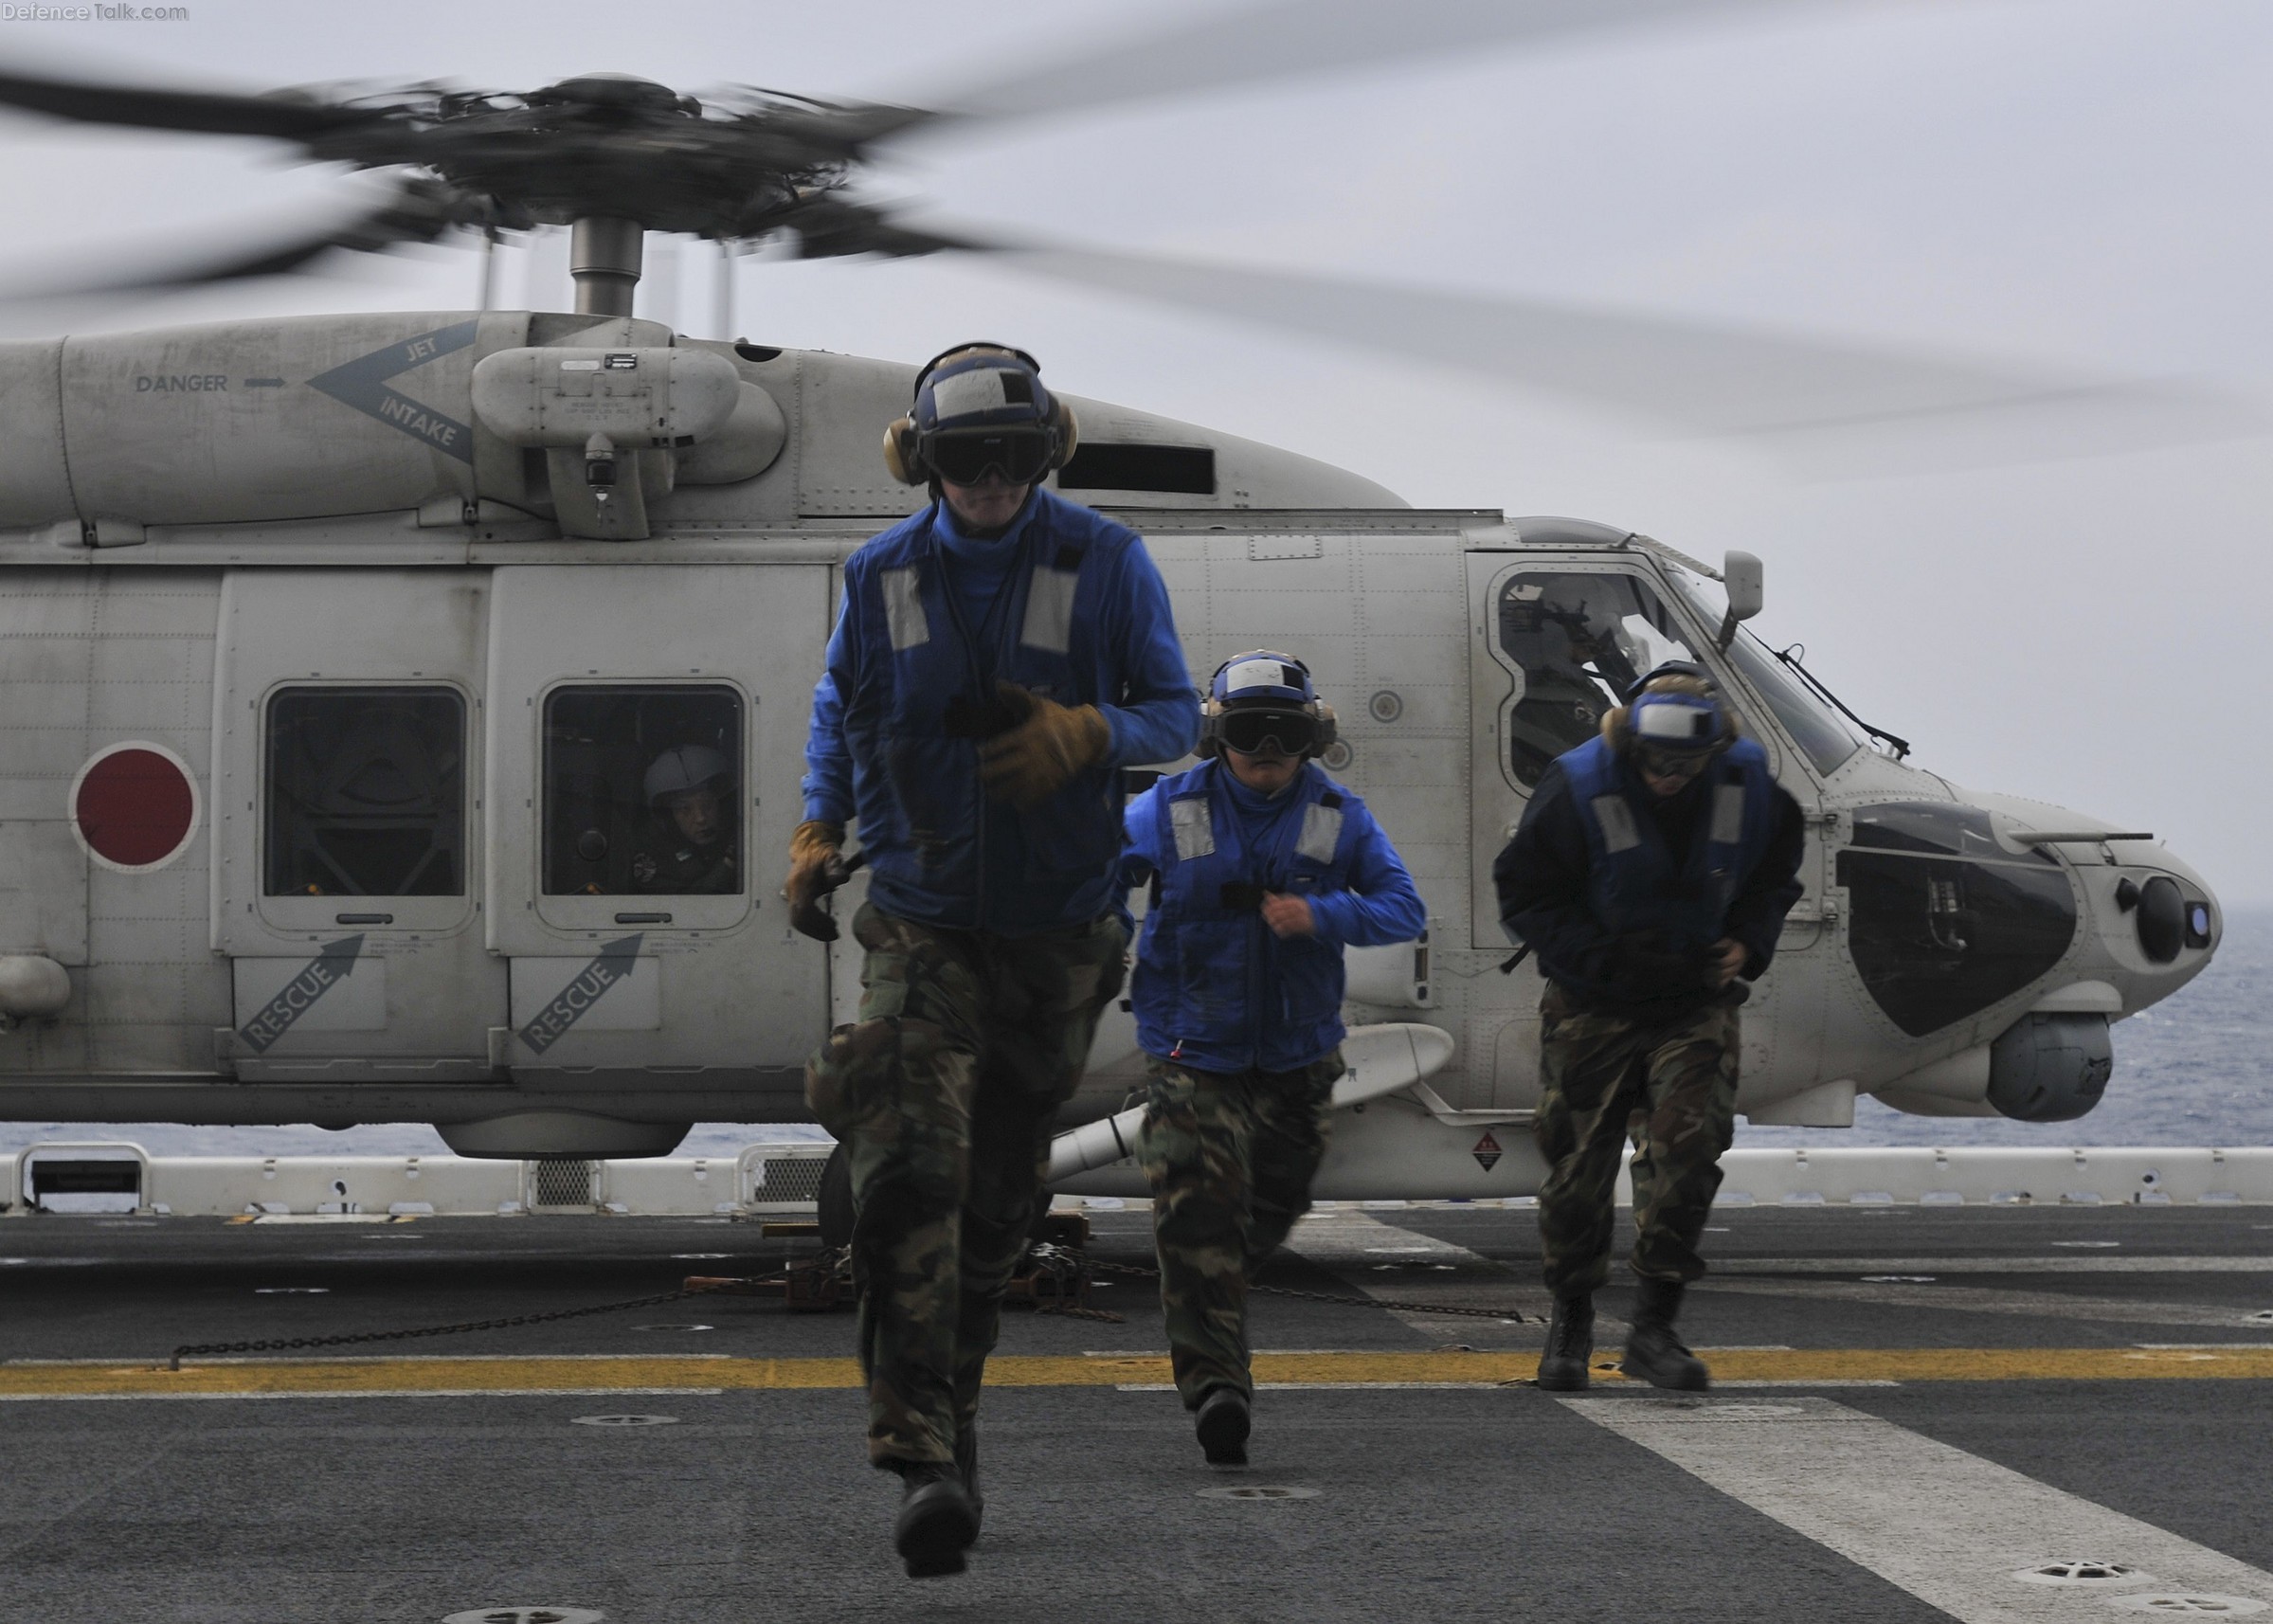 JMSDF SH-60K Sea Hawk helicopter